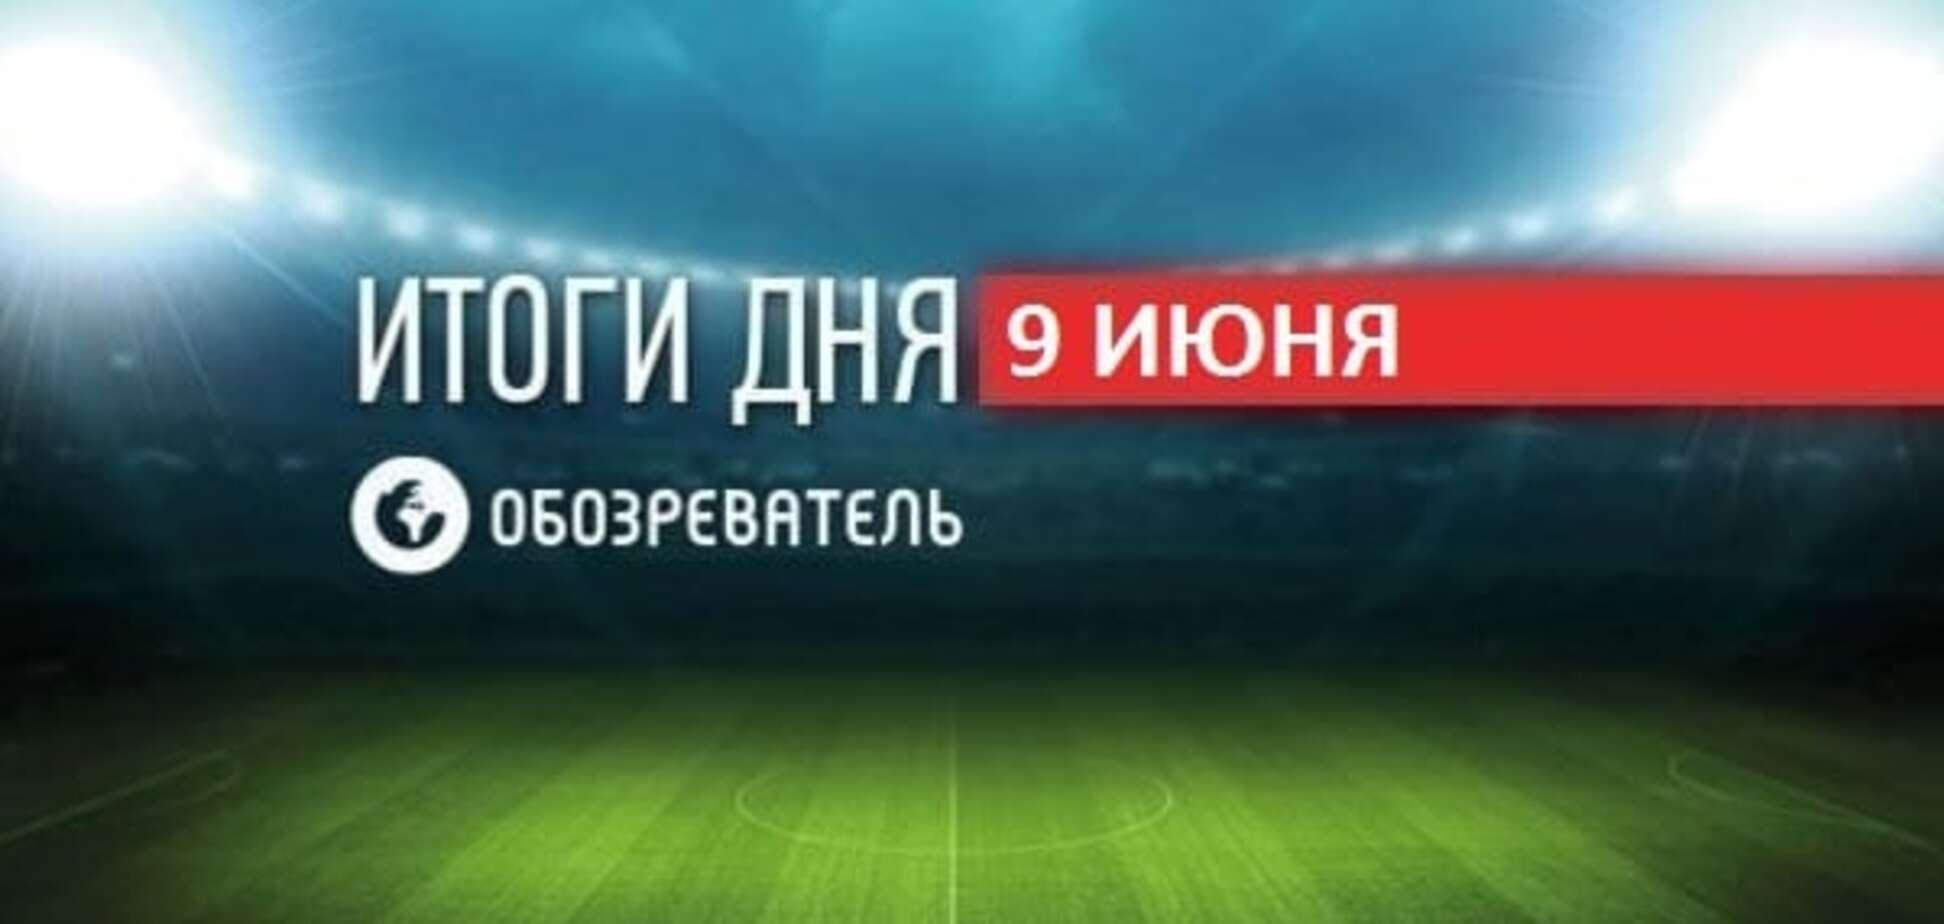 Игрок 'Шахтера' побывал возле 'Донбасс Арены'. Спортивные итоги 9 июня